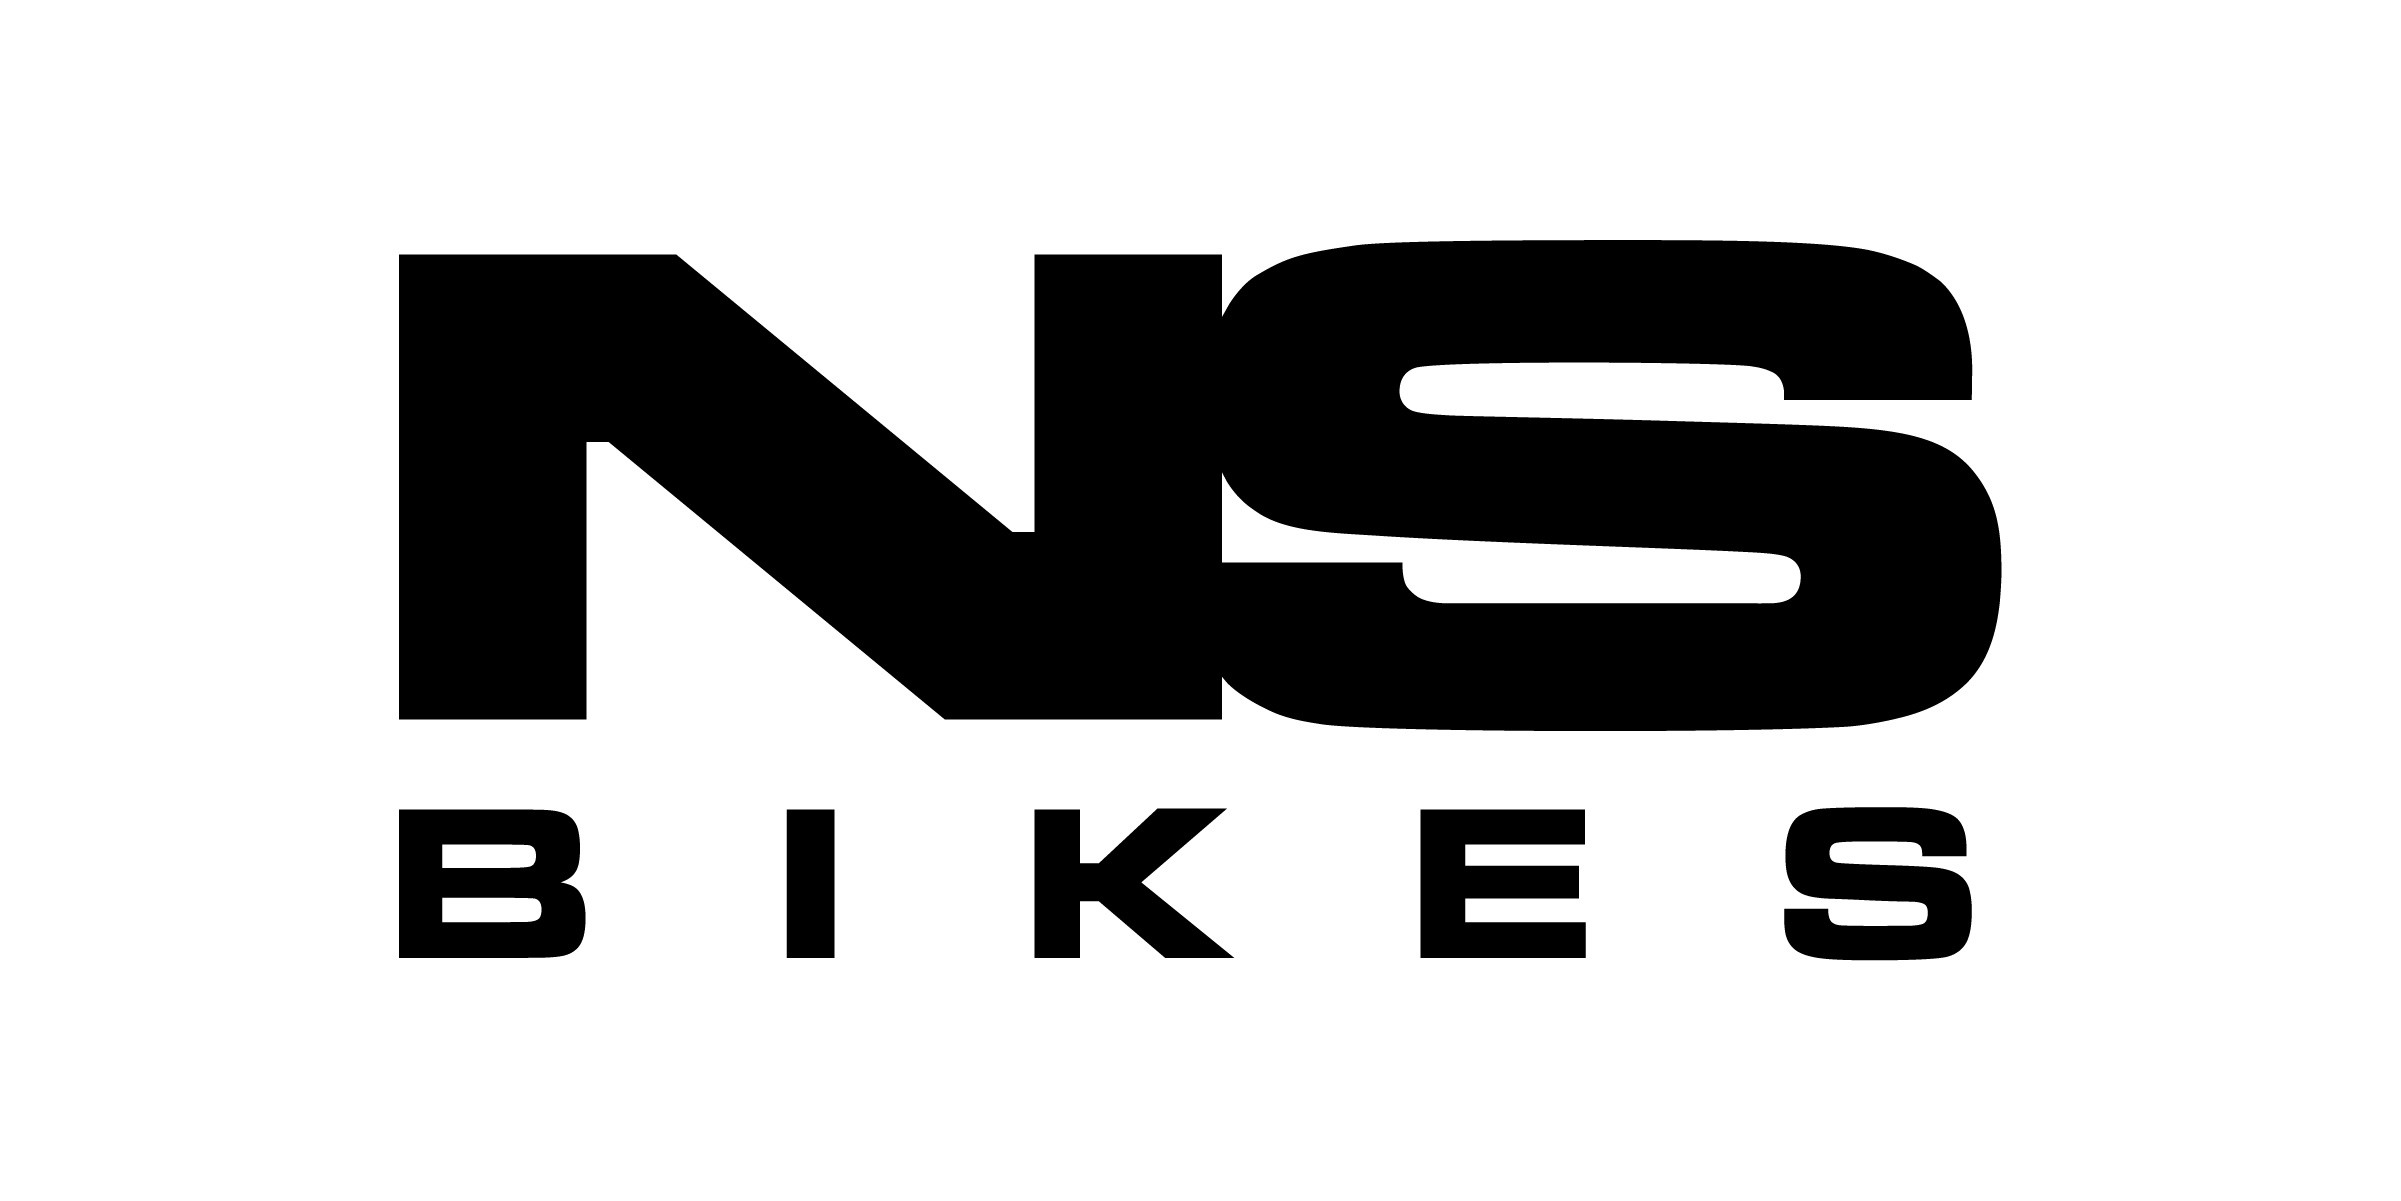 NS Bikes 